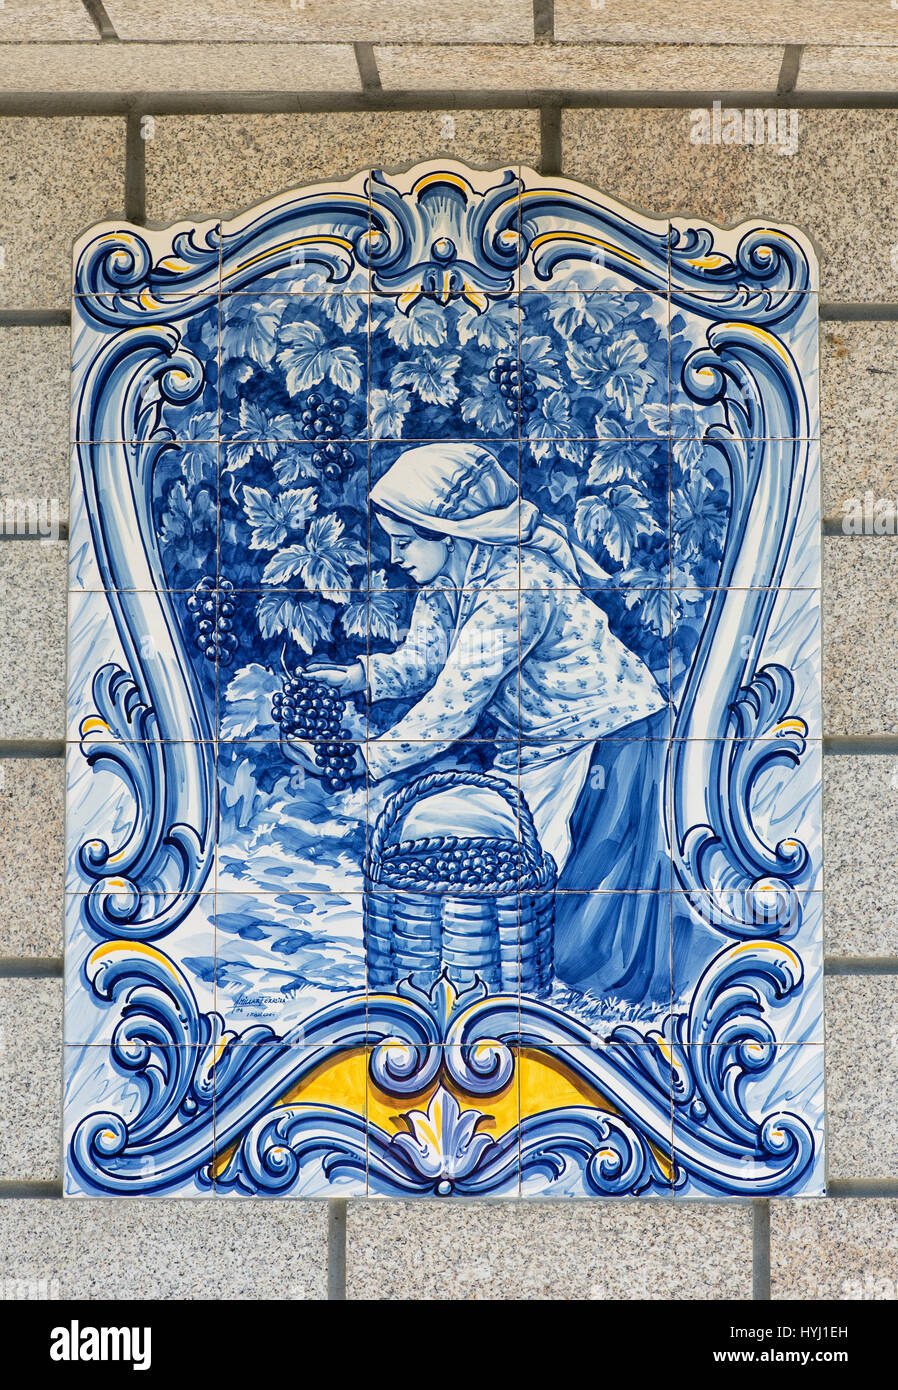 Azulejo, carreaux de céramique avec motif woman harvesting grapes, région viticole du Haut-Douro, Pinhao, Portugal Banque D'Images